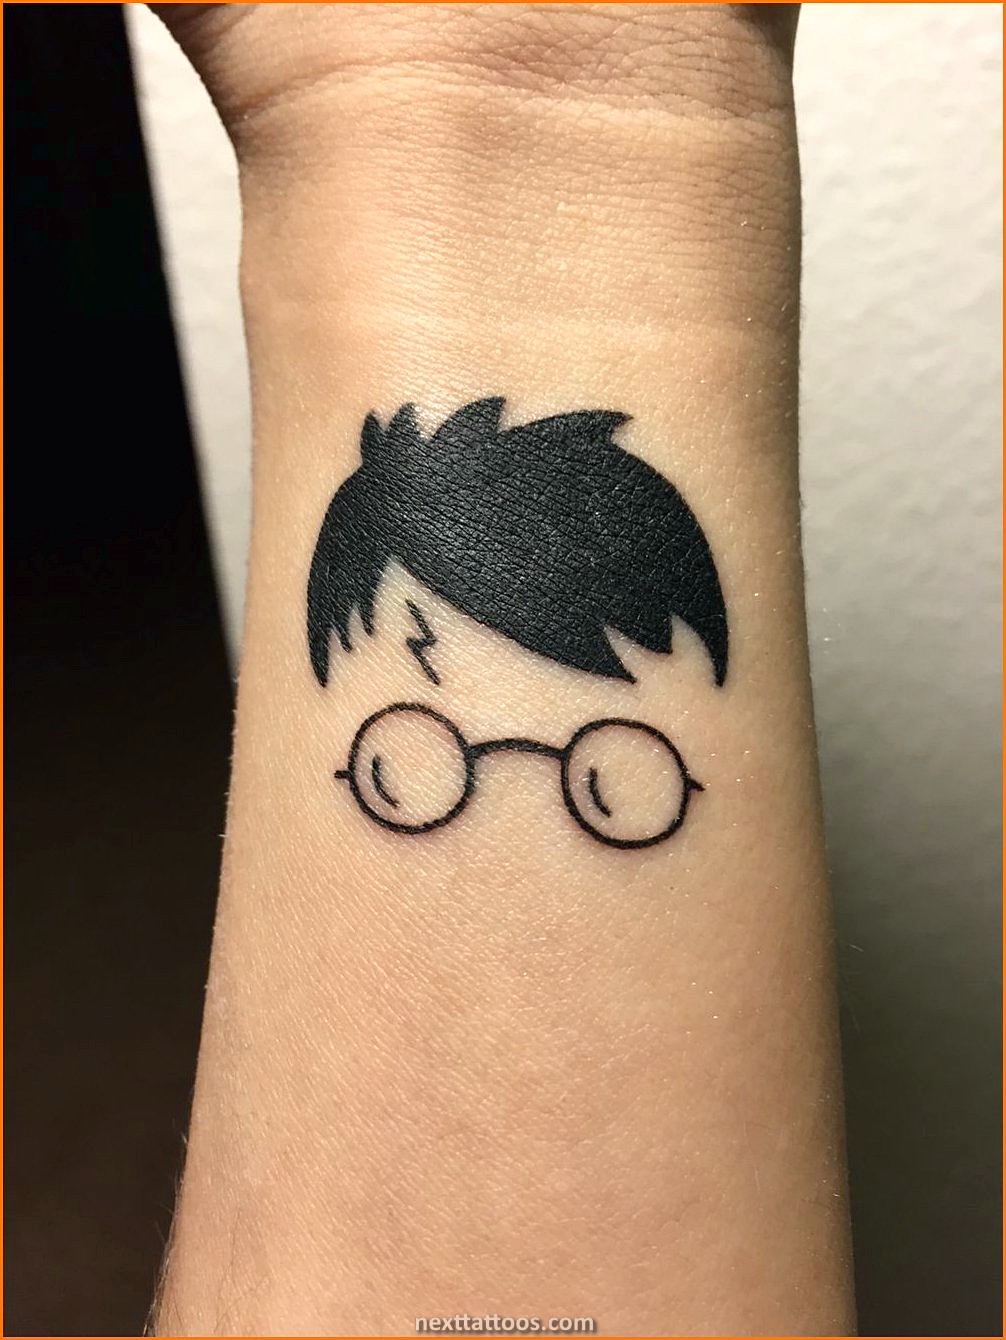 Harry Potter Tattoo Ideas - Getting a Harry Potter Tattoo